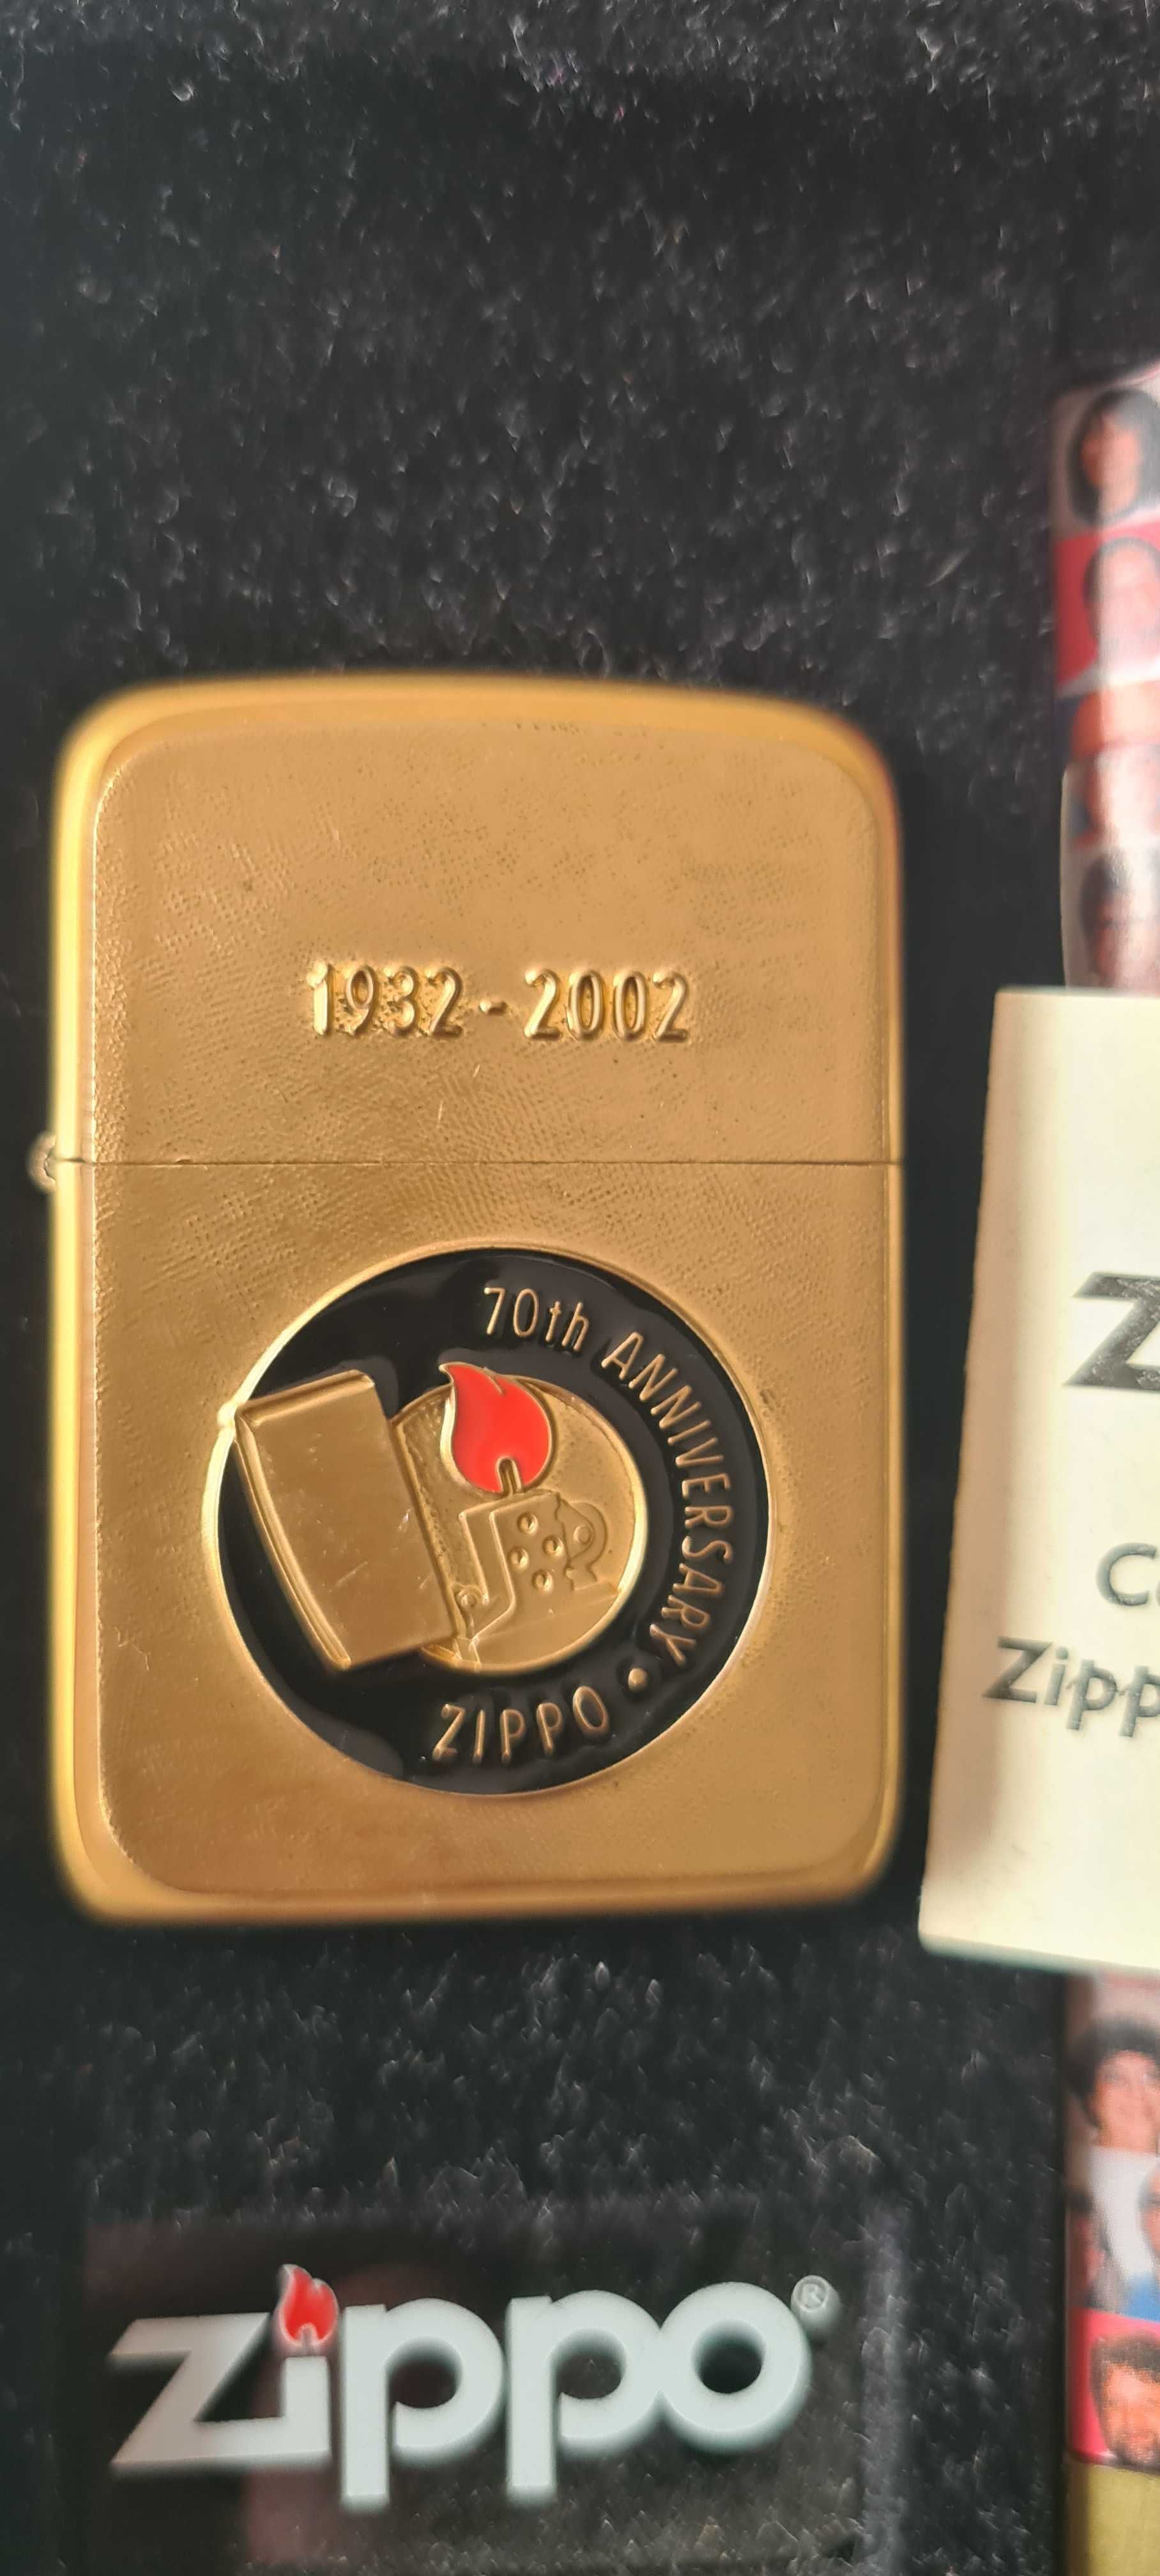 Zapalniczka Zippo 70TH ANNIVERSARY 1932 -2002. Now